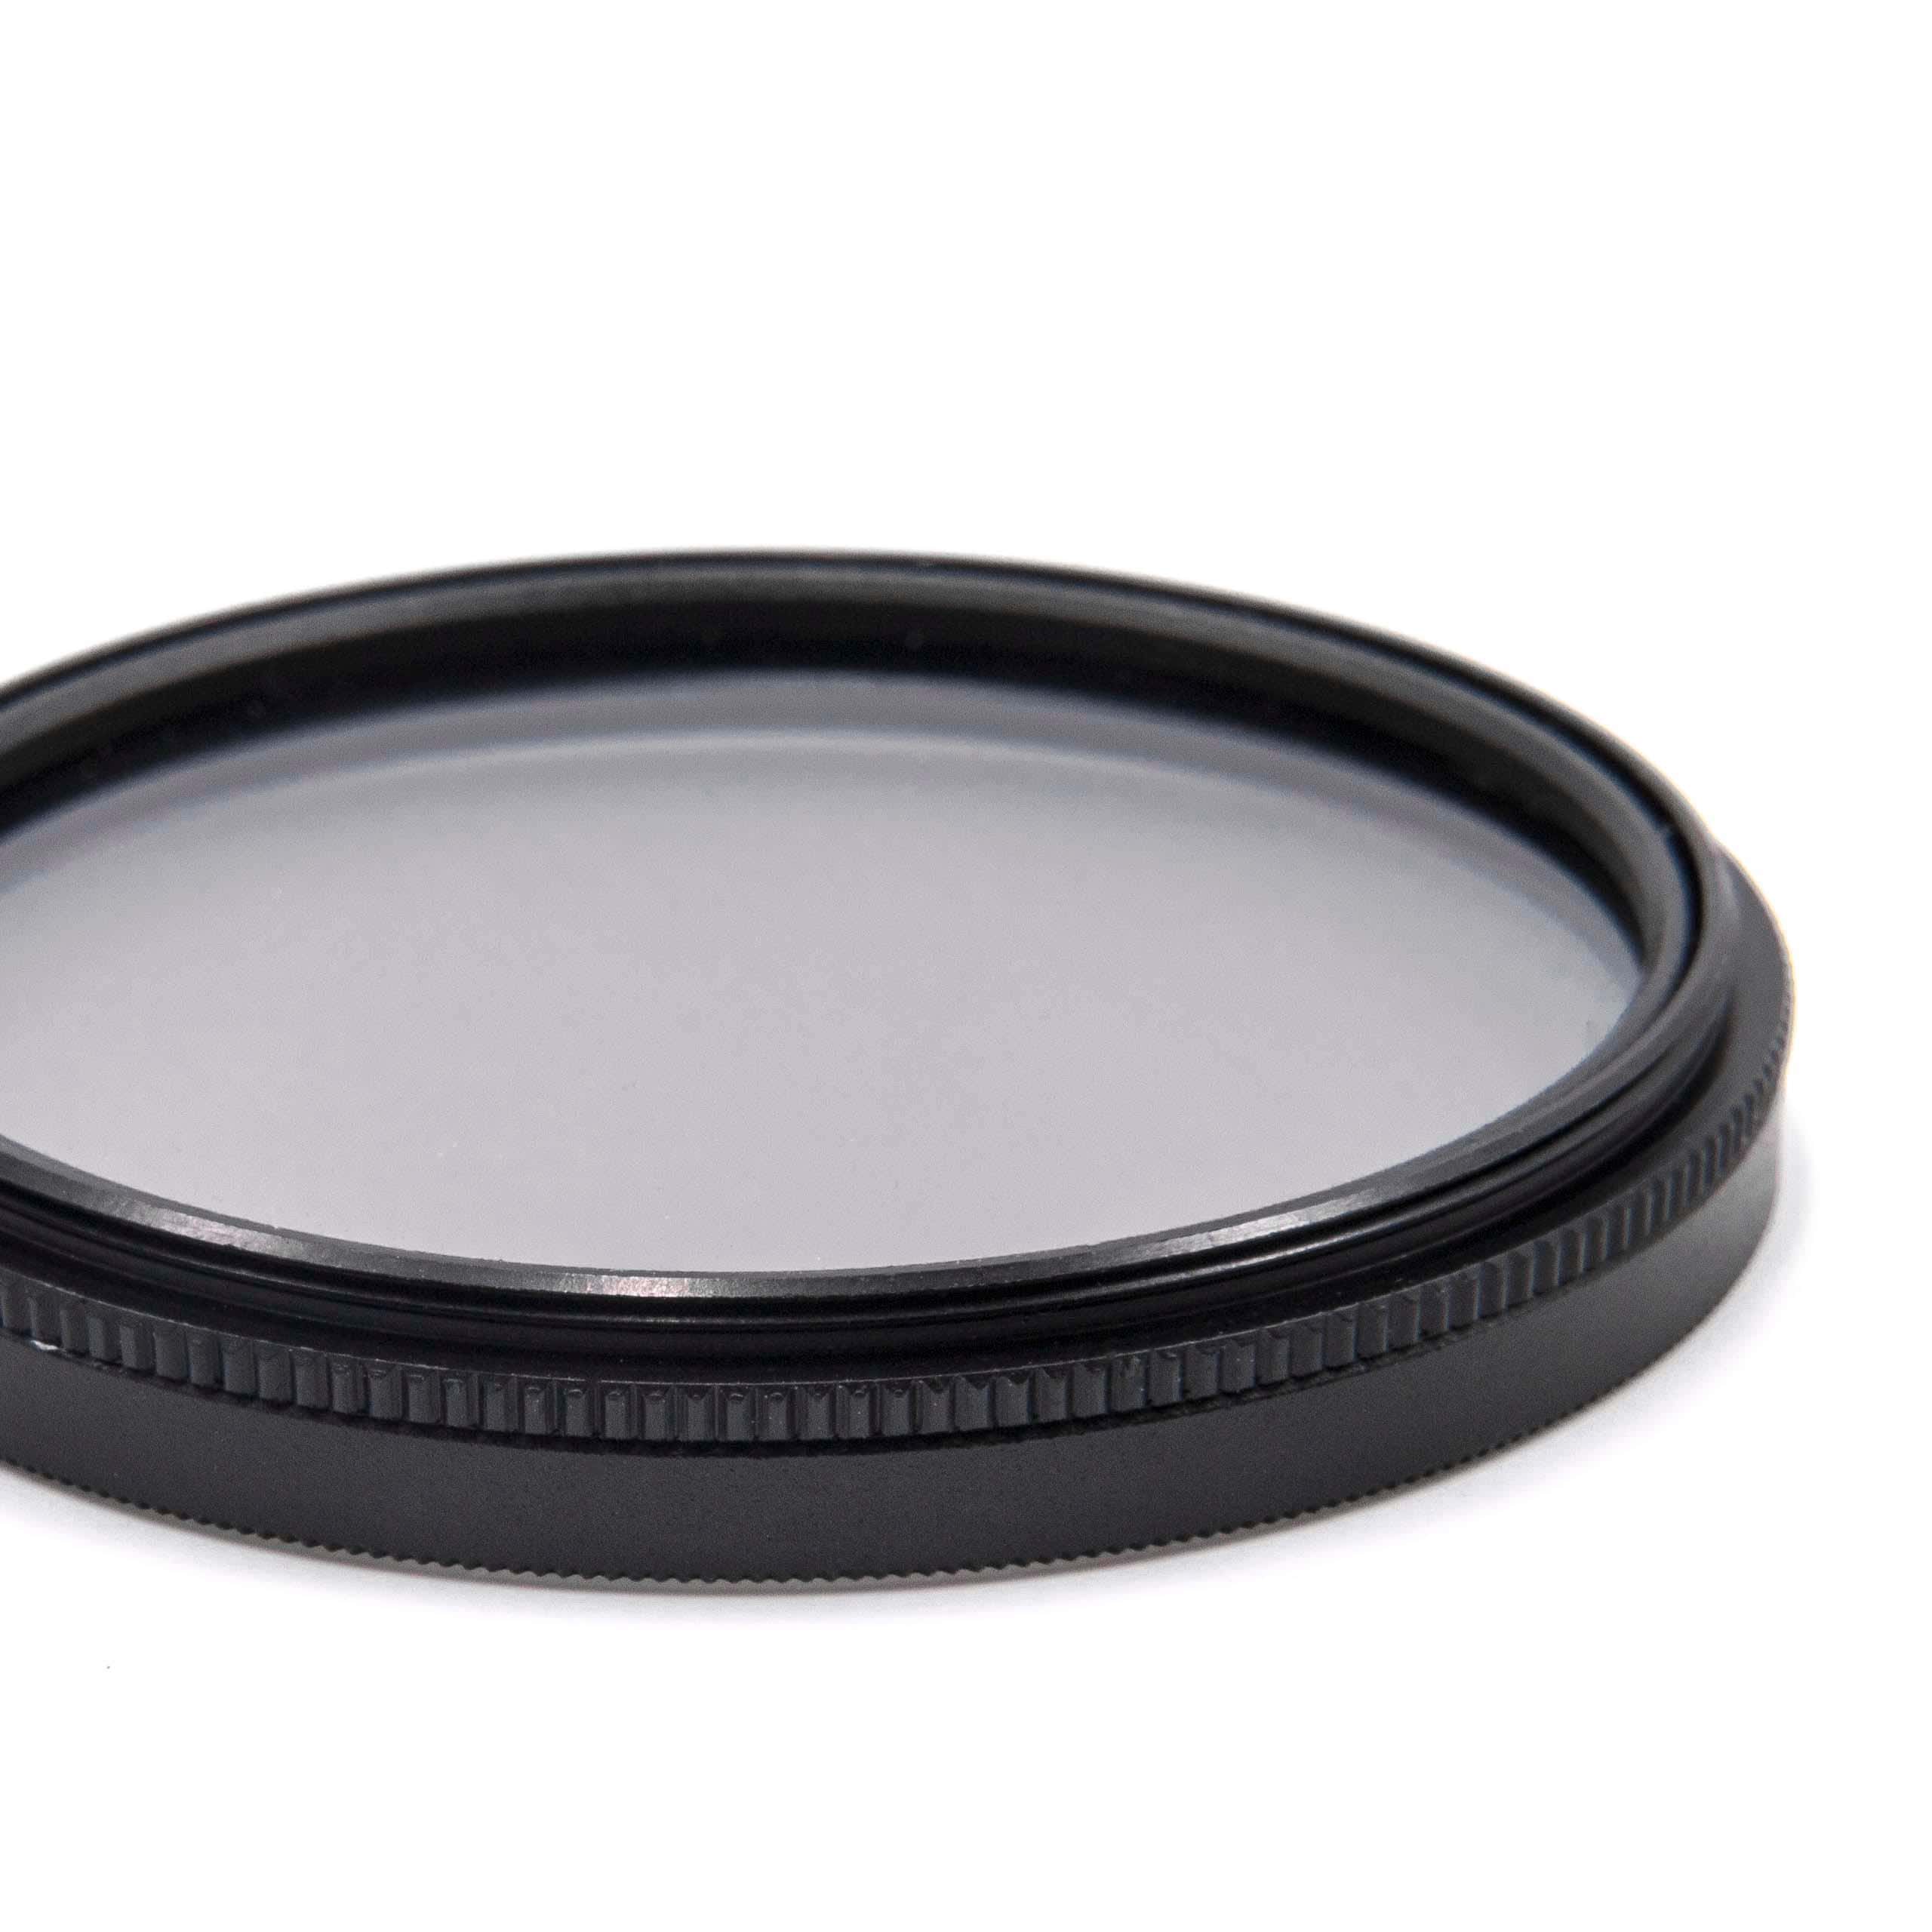 Filtro polarizzatore per camere e obiettivi con filettatura da 52 mm - filtro polarizzante circolare (CPL)